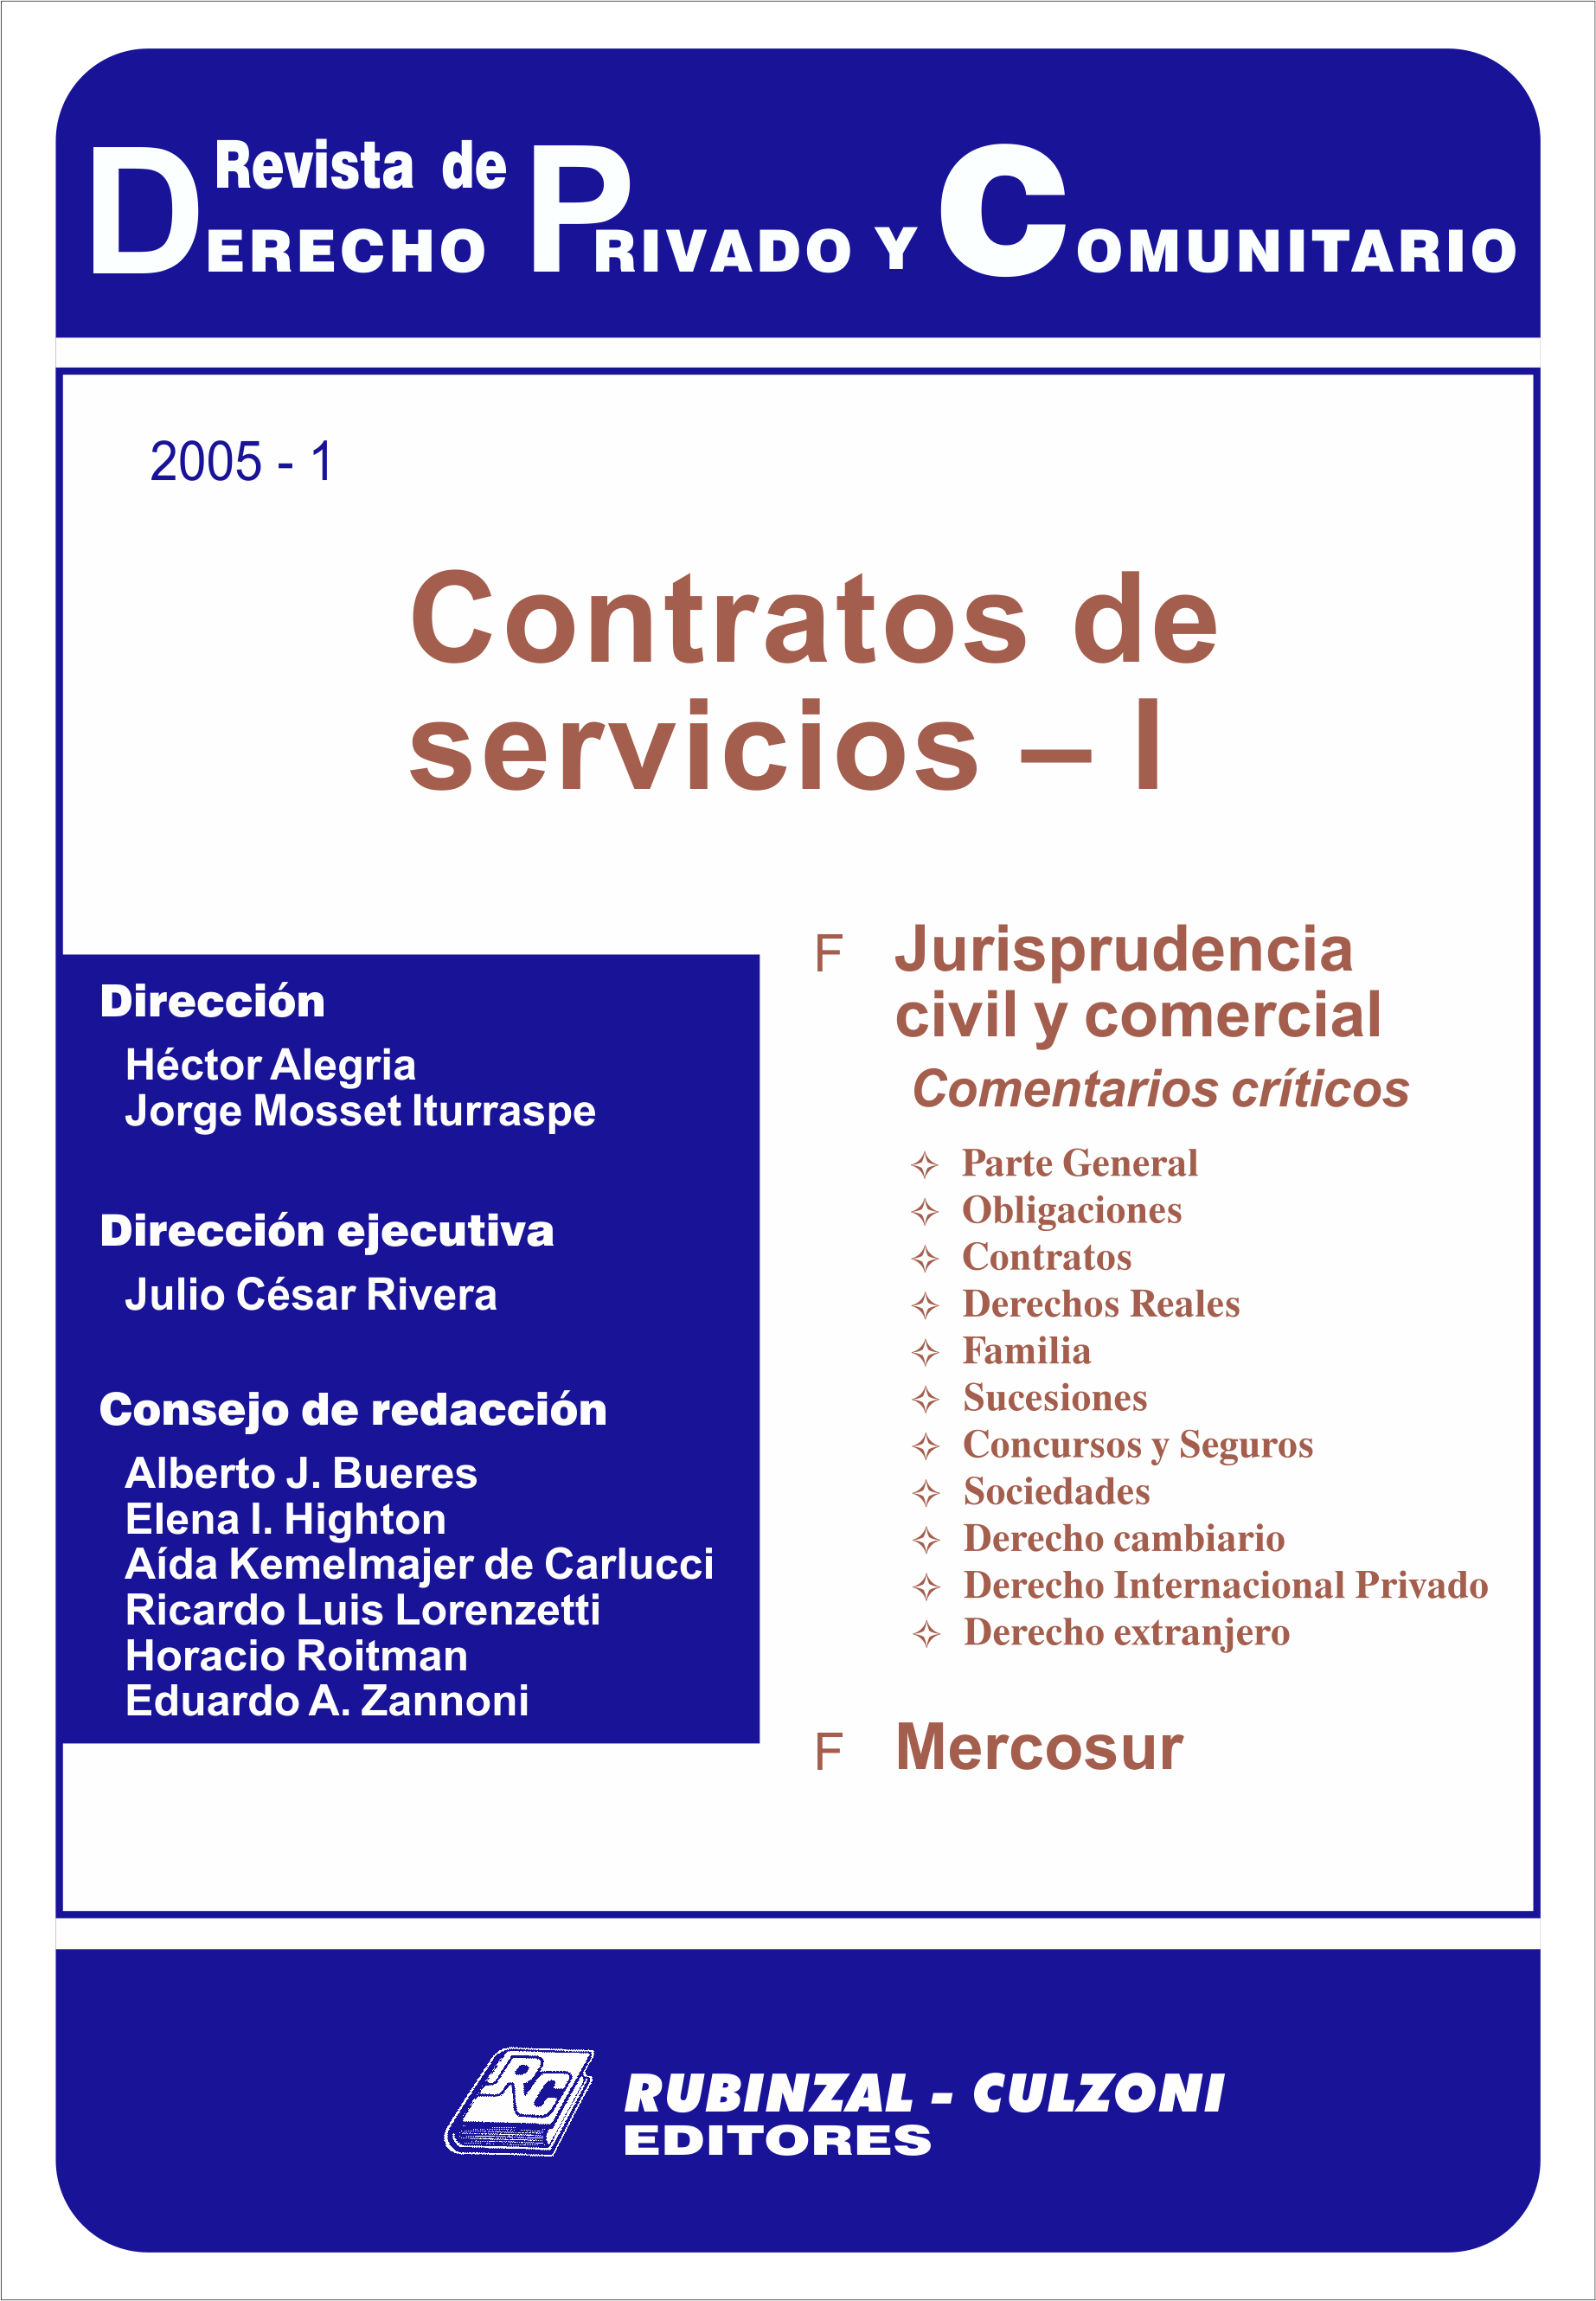 Revista de Derecho Privado y Comunitario - Contratos de servicios - I